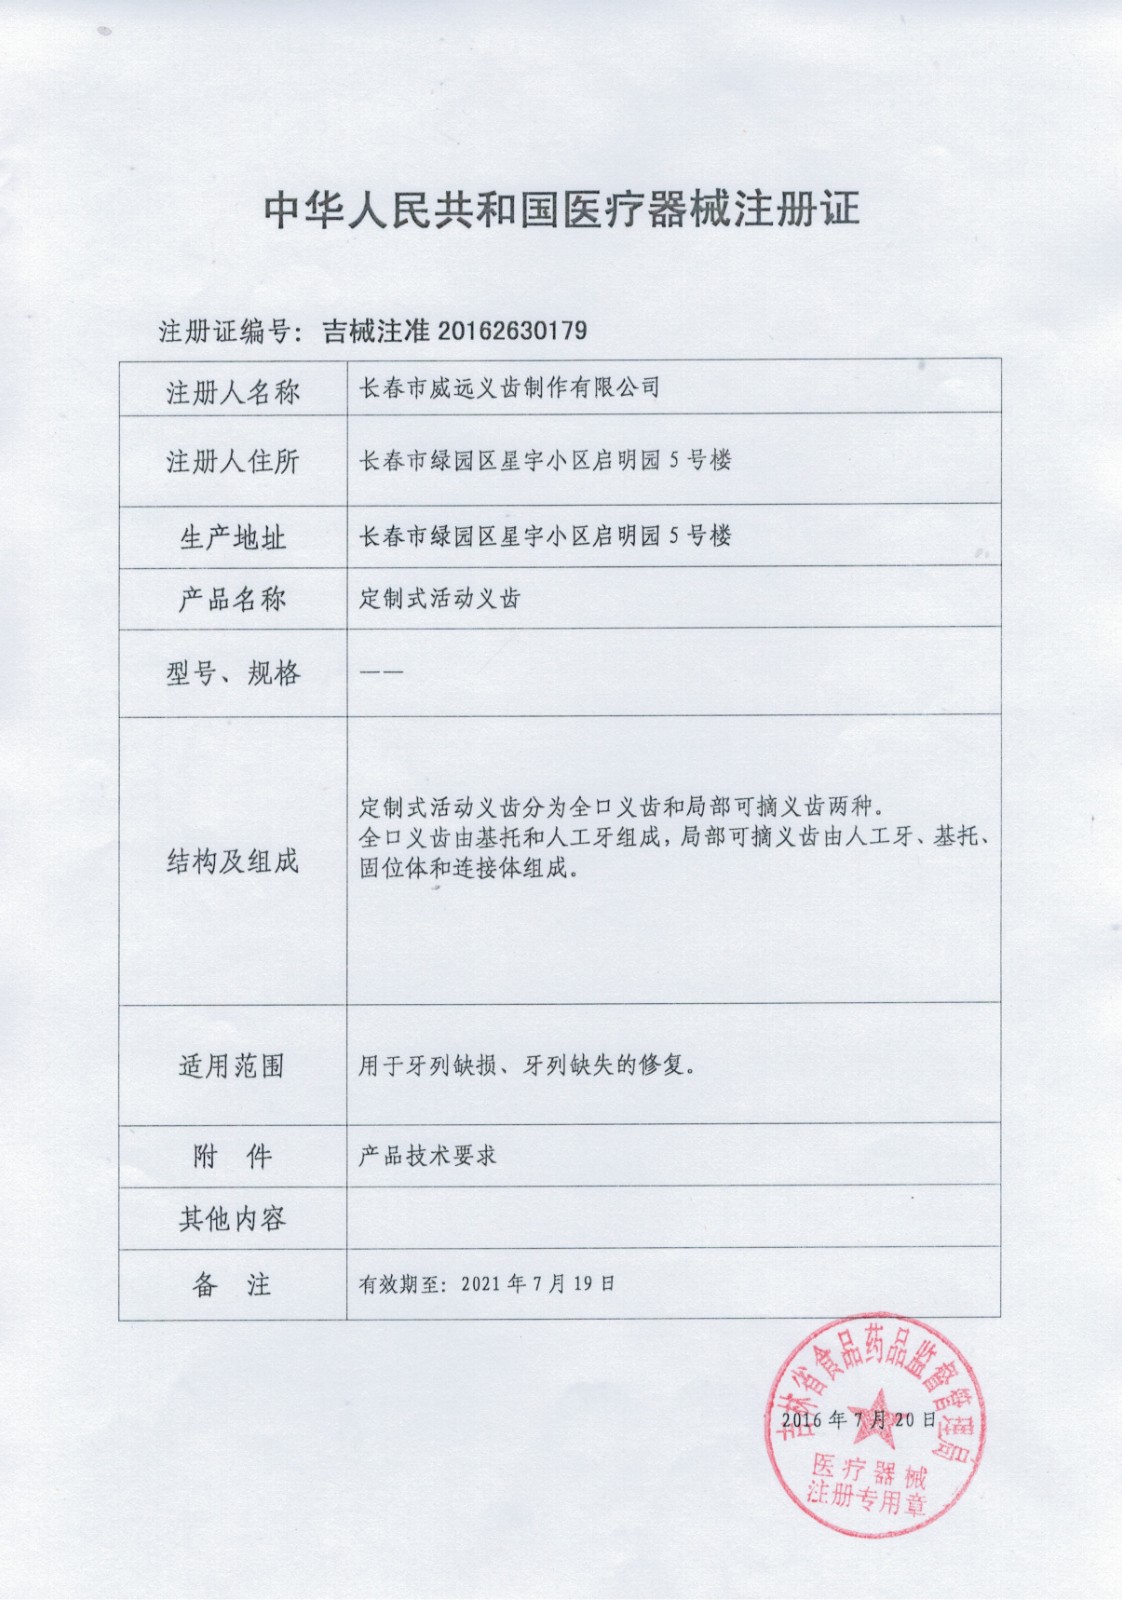 中华人民共和国医疗器械注册证-2缩小尺寸.jpg